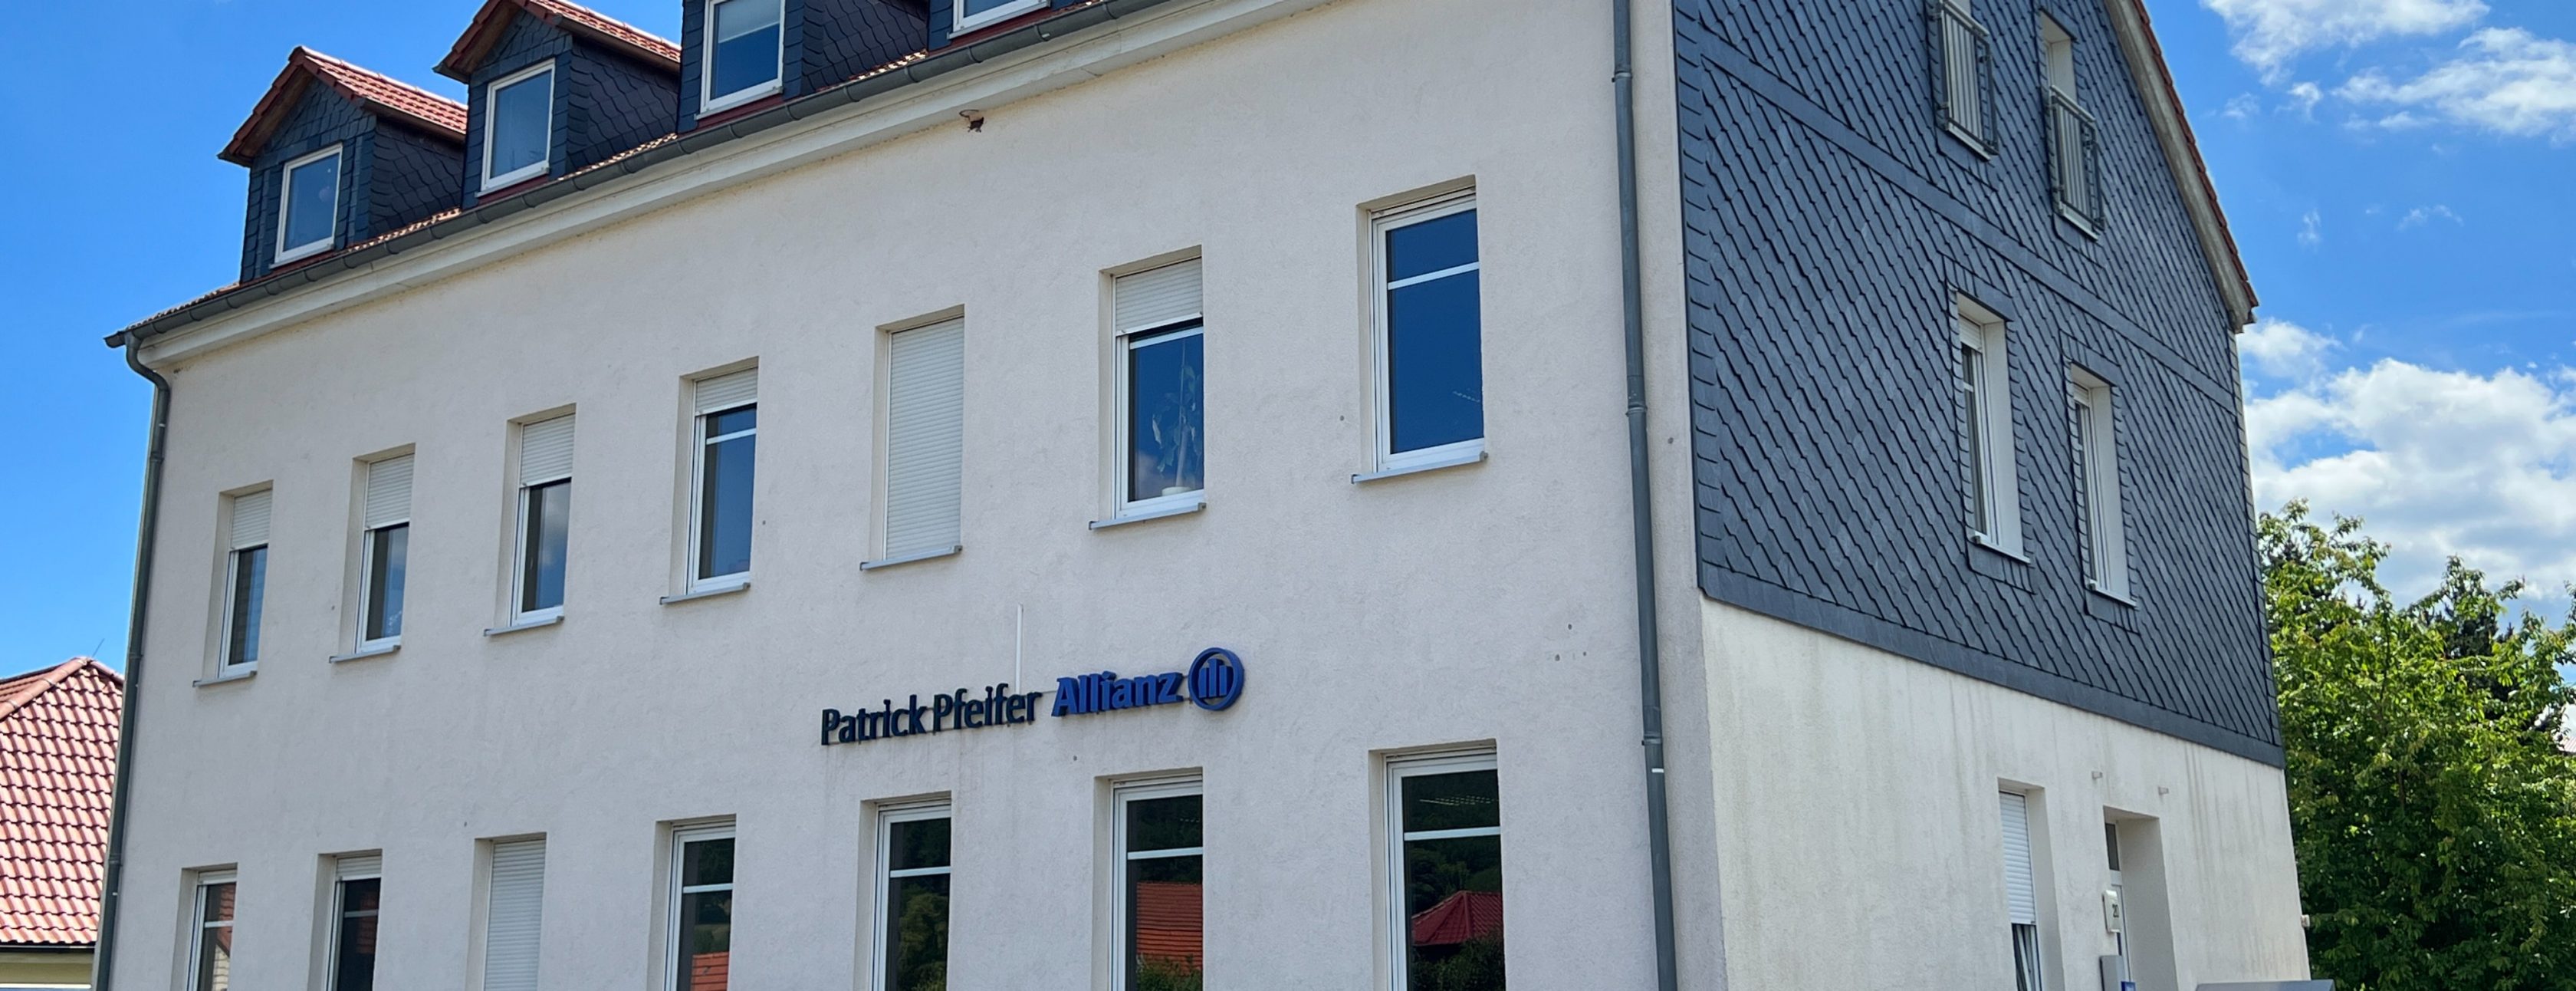 Allianz Versicherung Patrick Pfeifer Waltershausen - #Firmen#unternehmer#handwerker#versicherung#Trade